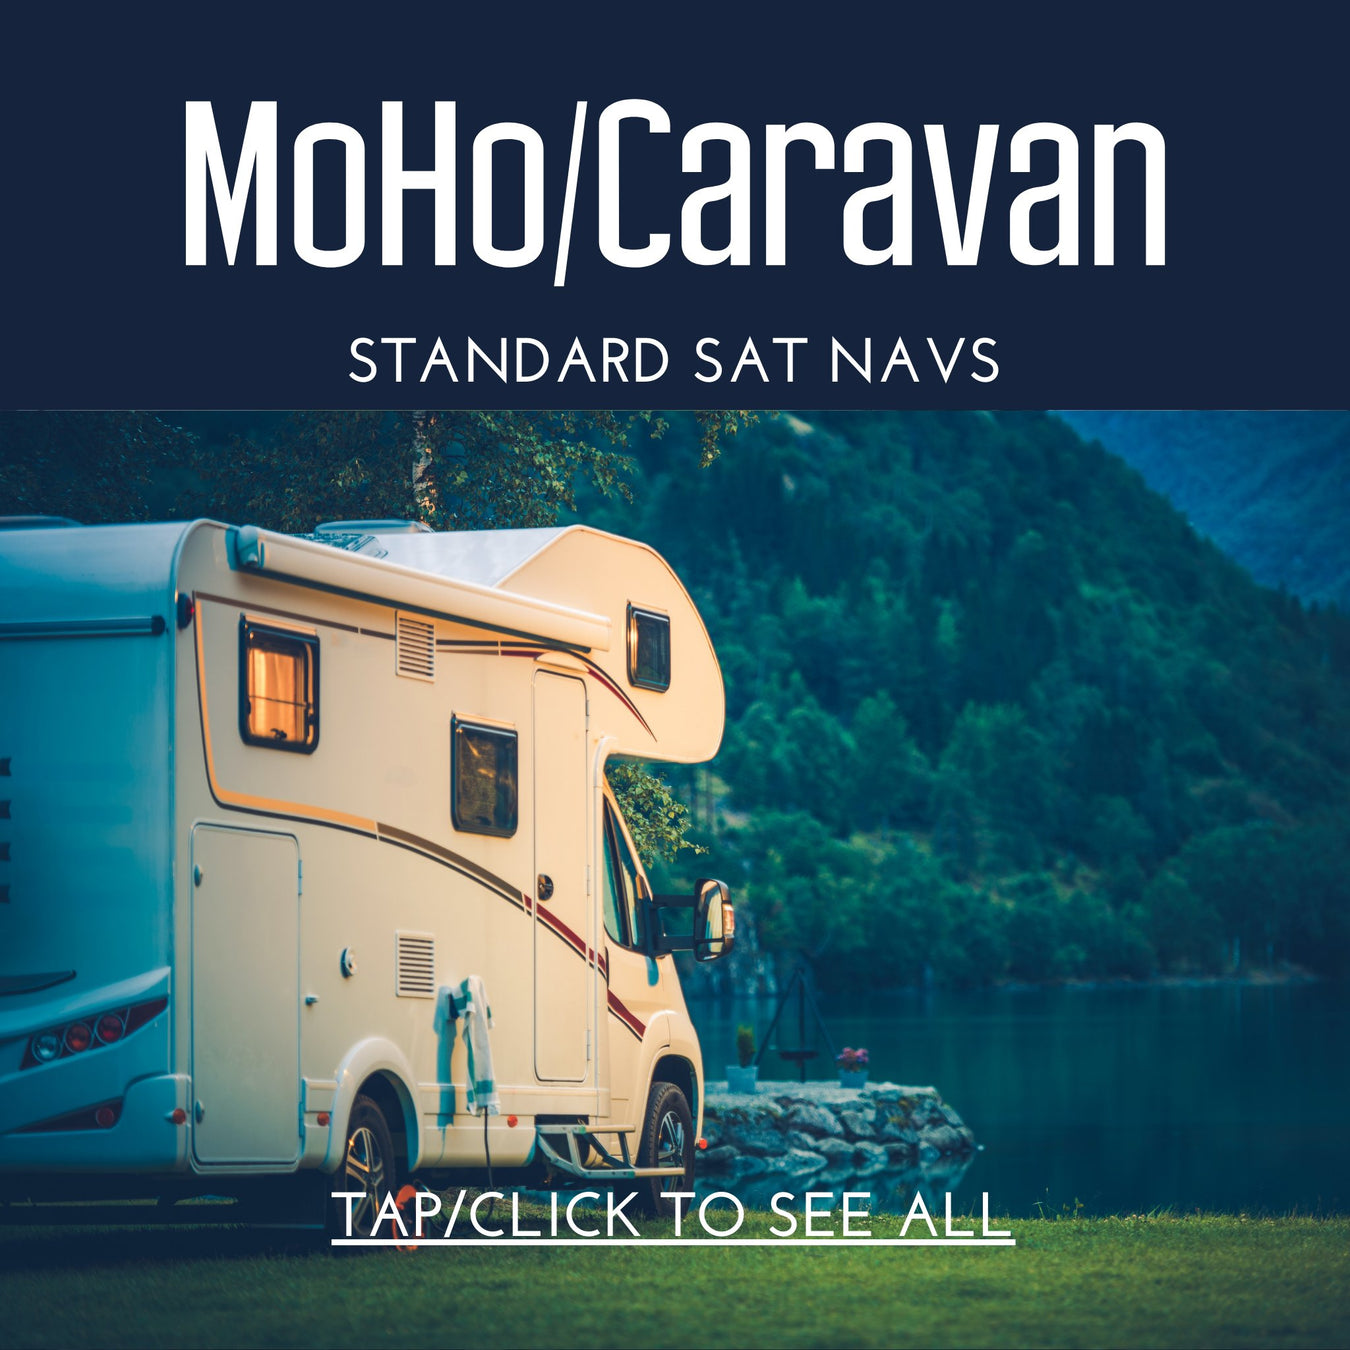 MoHo/Camper Standard Sat Navs